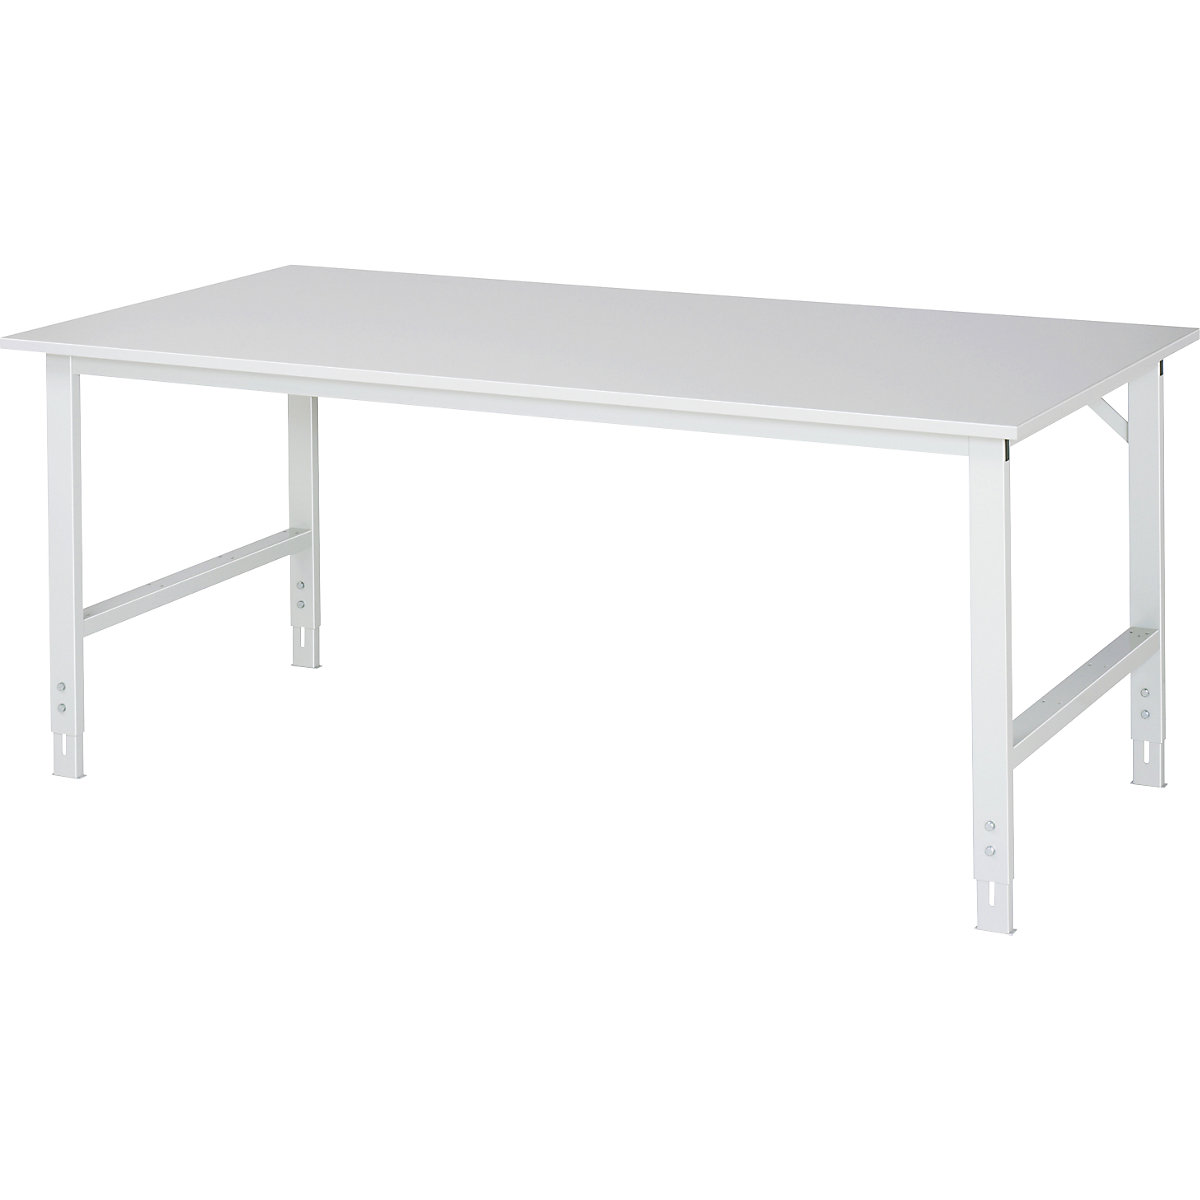 Pracovní stůl – RAU, výška 770 – 1090 mm, spodní část 1900 x 860 mm